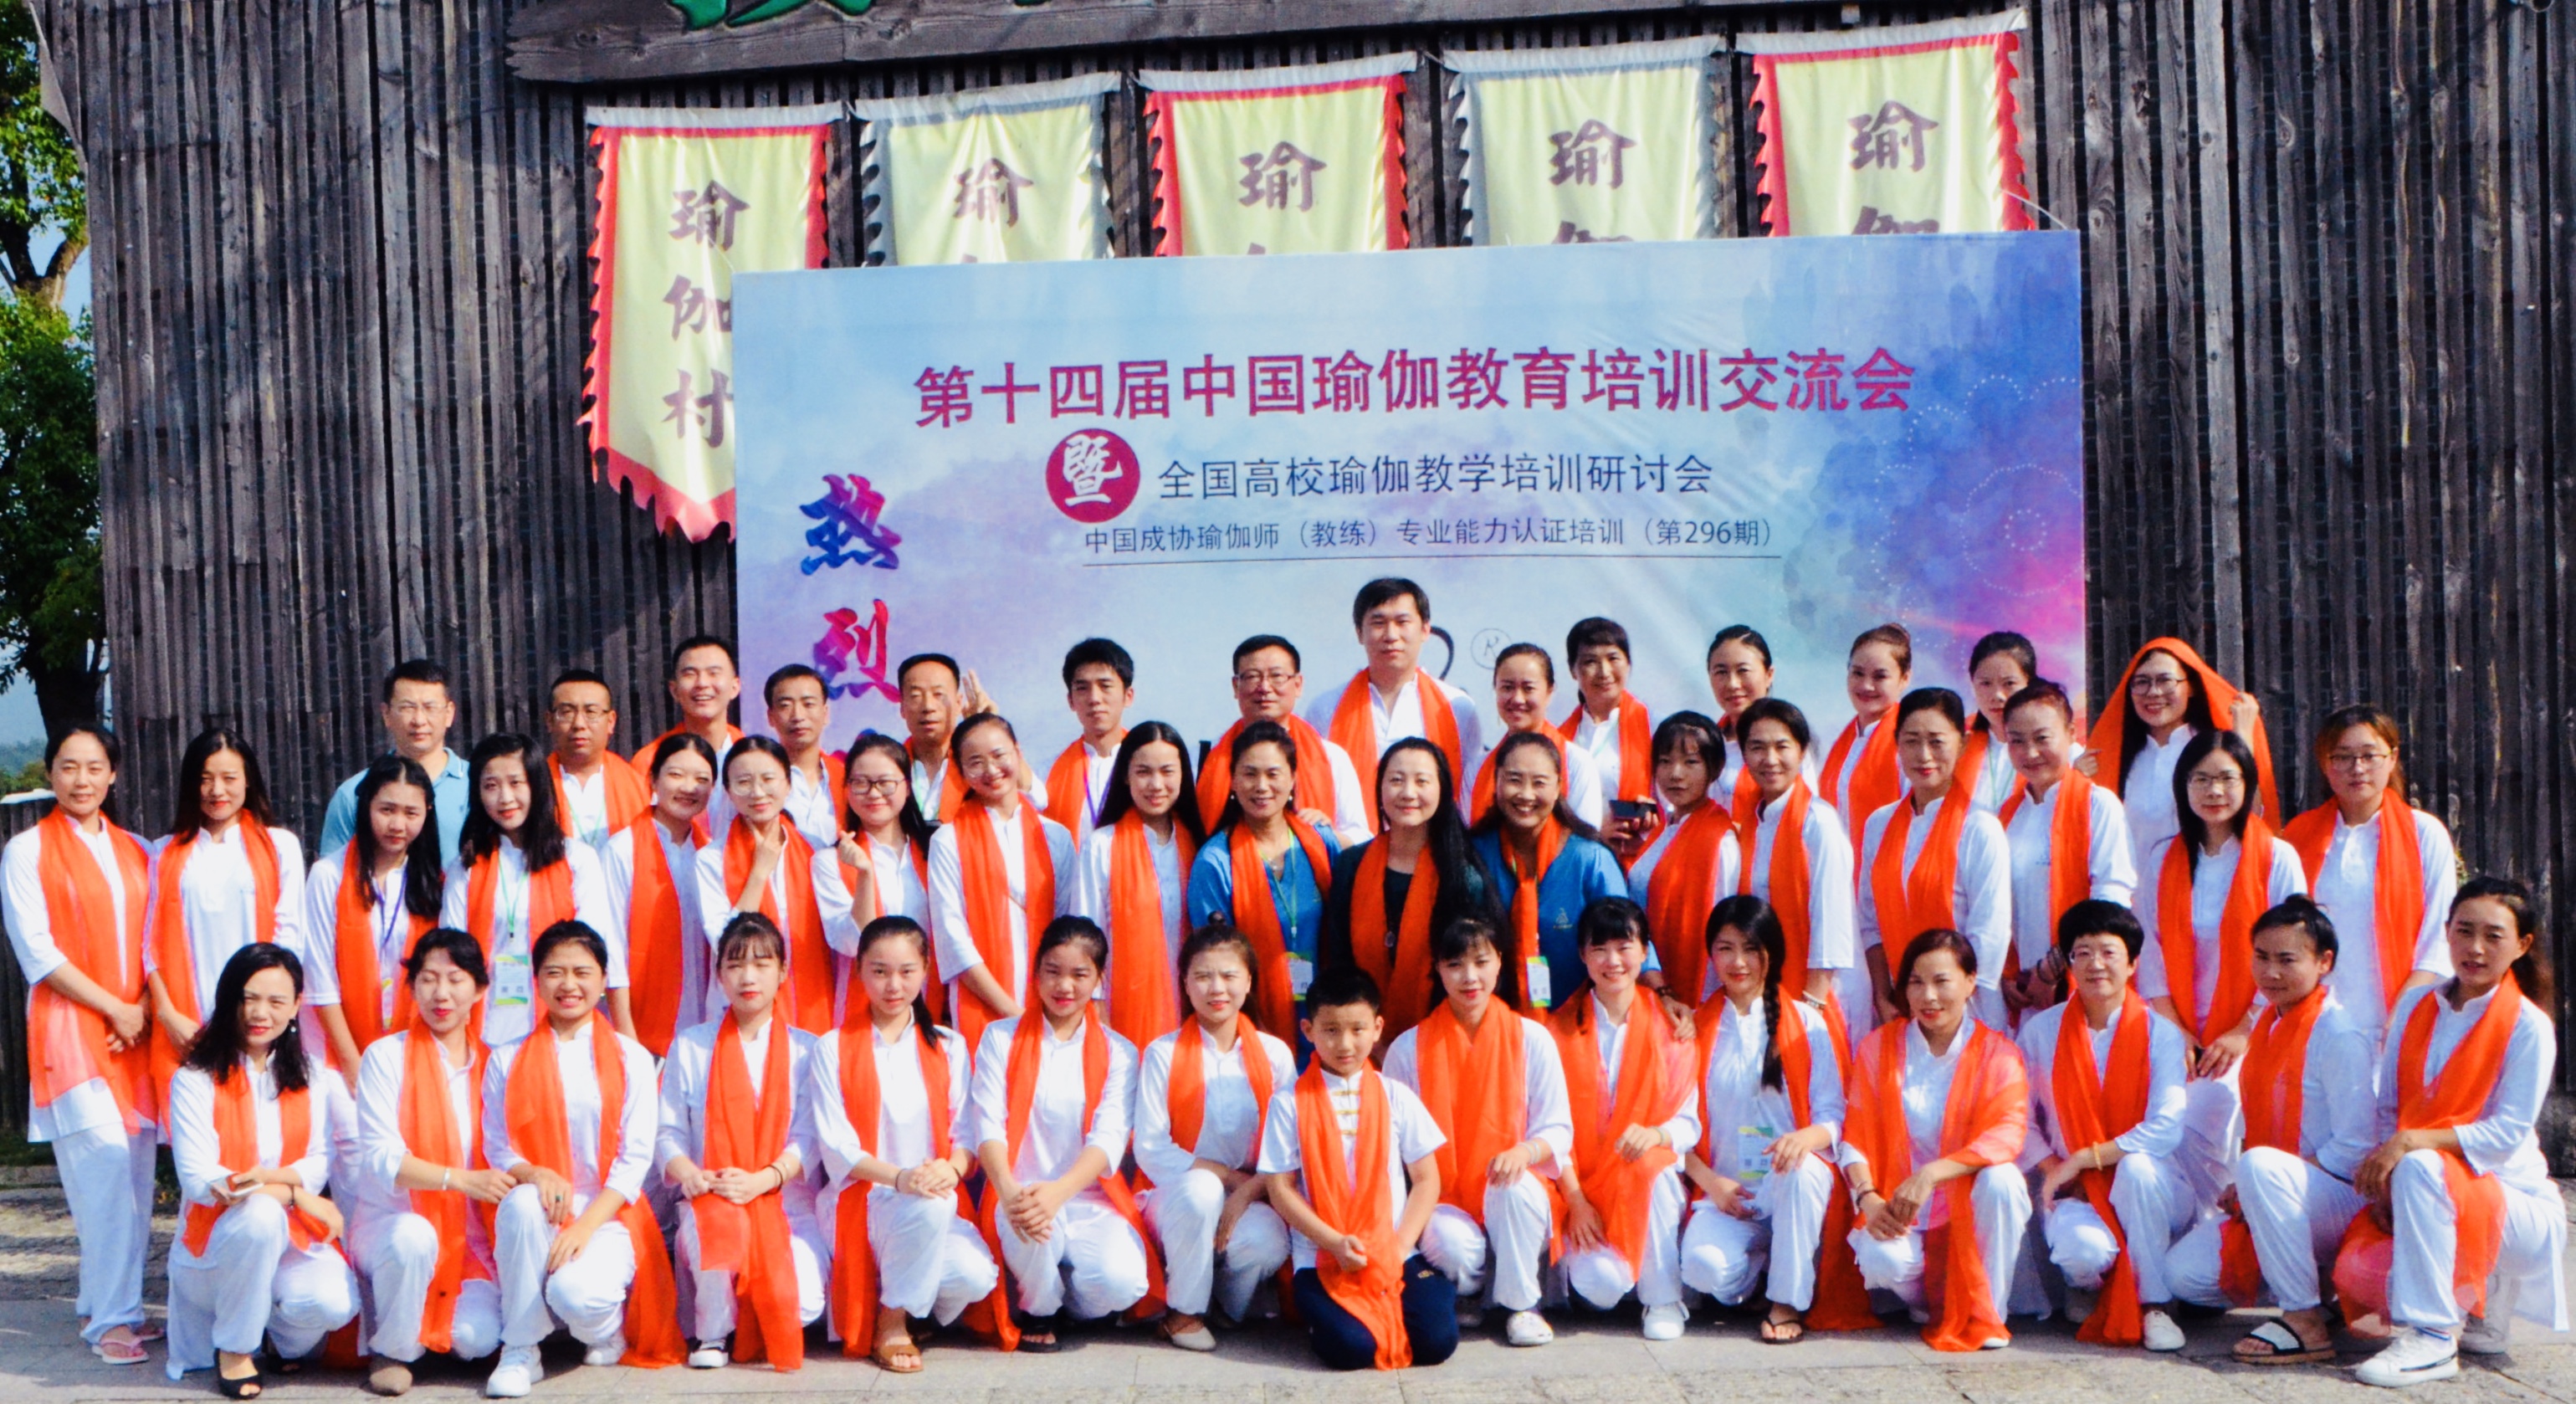 第十四届中国瑜伽教育培训交流会 暨全国高校